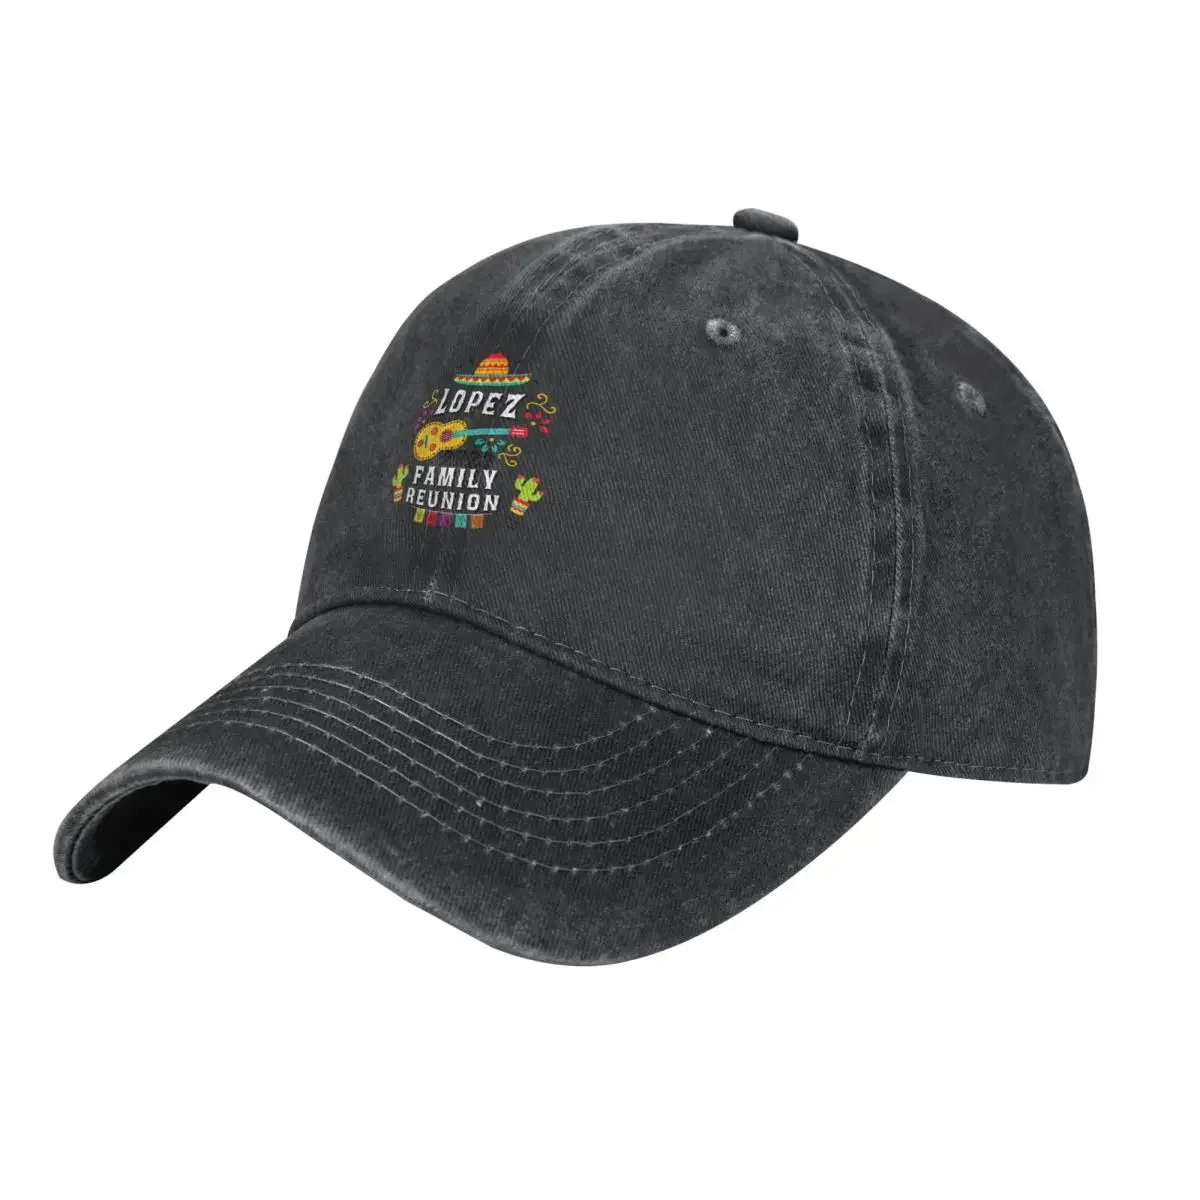 

LopezREUNION2023 Cowboy Hat Trucker Cap Military Tactical Cap derby hat Golf Hat Men's Hats Women's